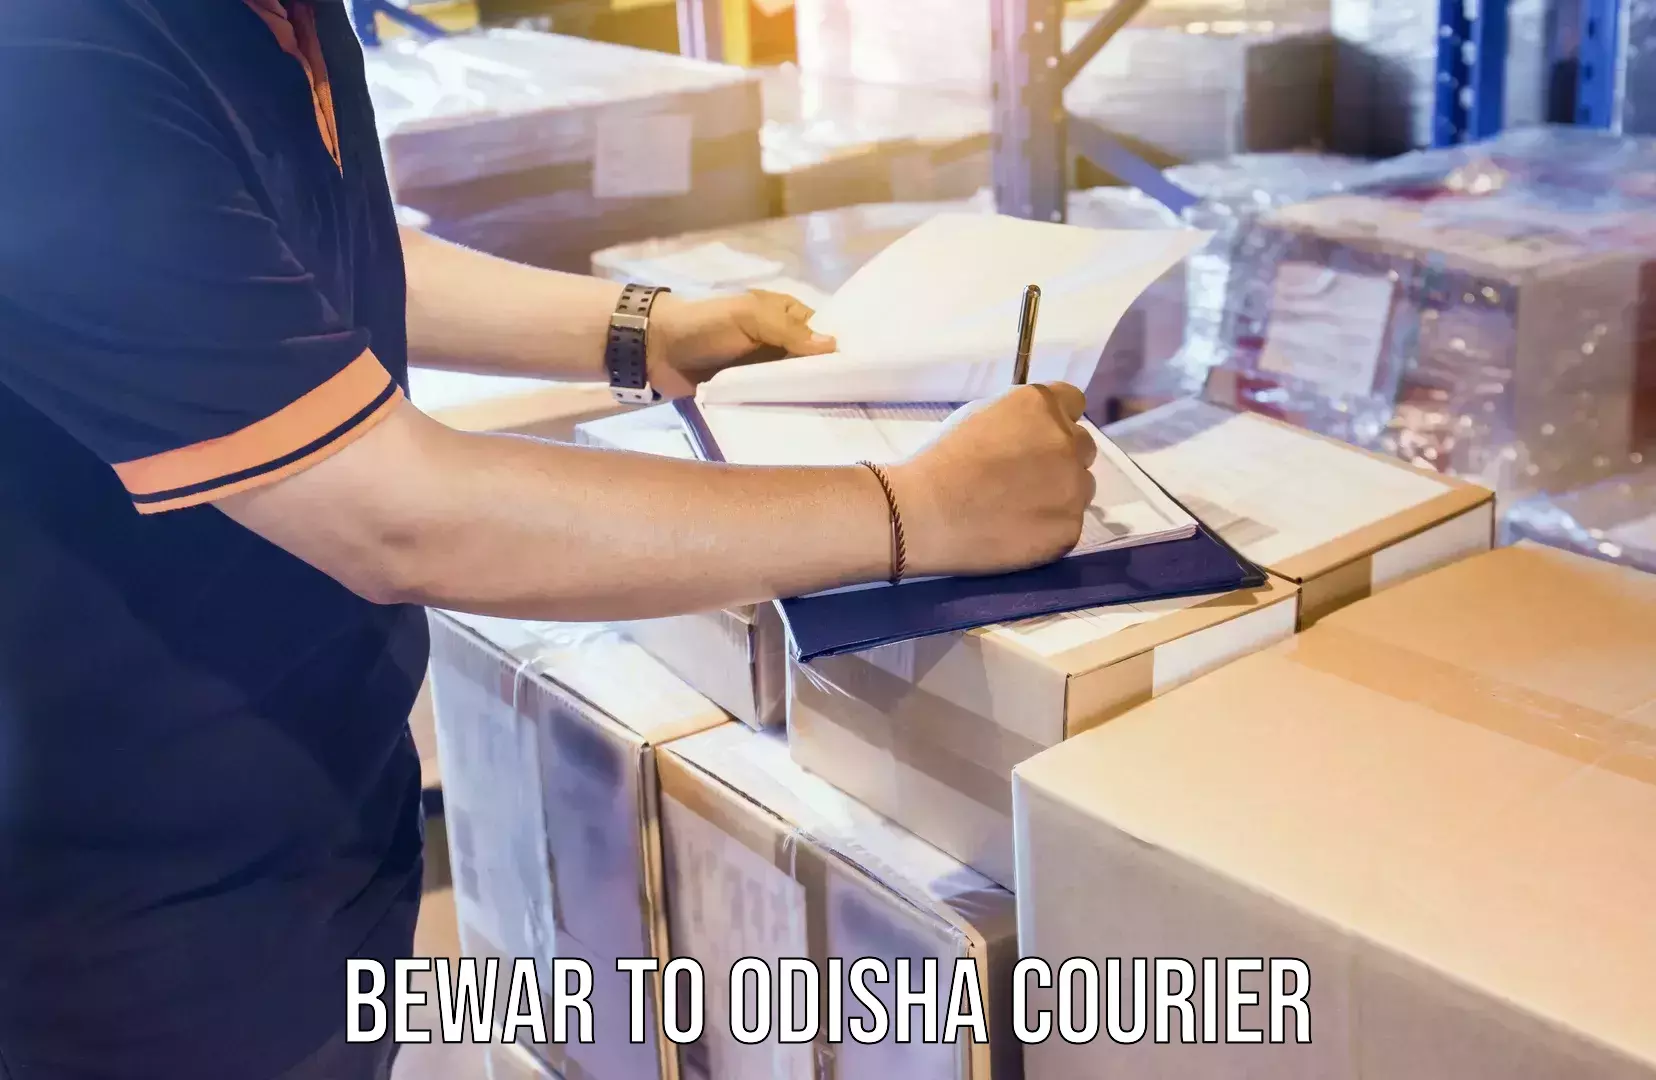 24/7 courier service Bewar to Odisha